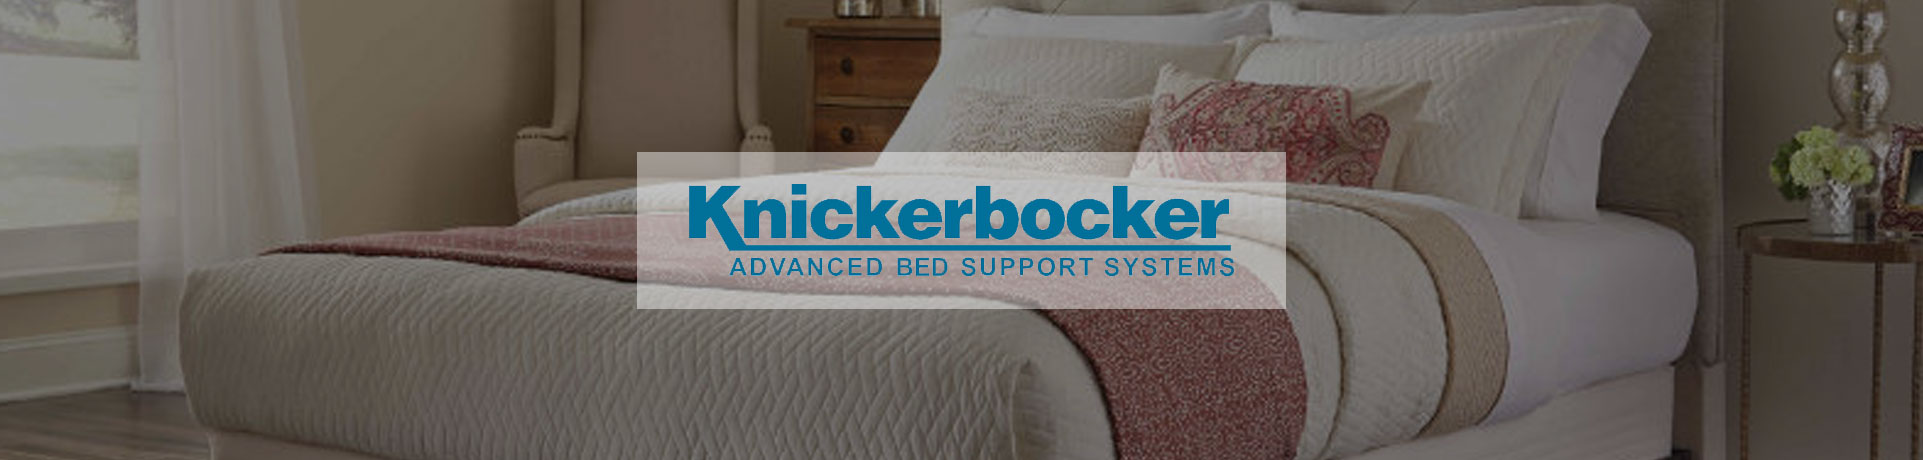 knickerbocker bedroom furniture